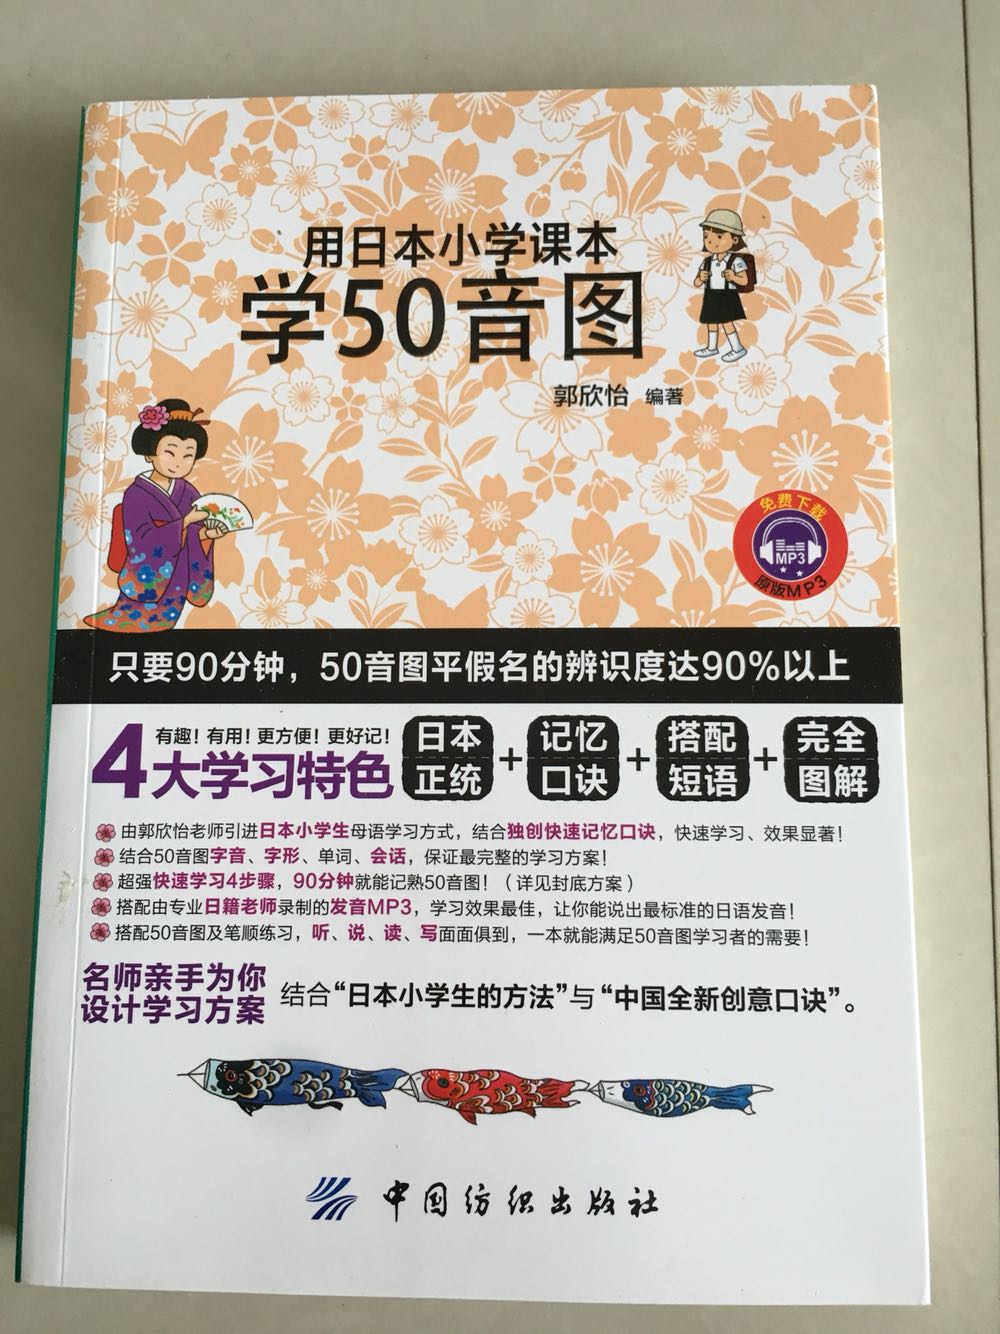 学日语，日语五十音老记混。这本书很有意趣，能很有趣地将五十音比较形象地展示出来，方便记忆。